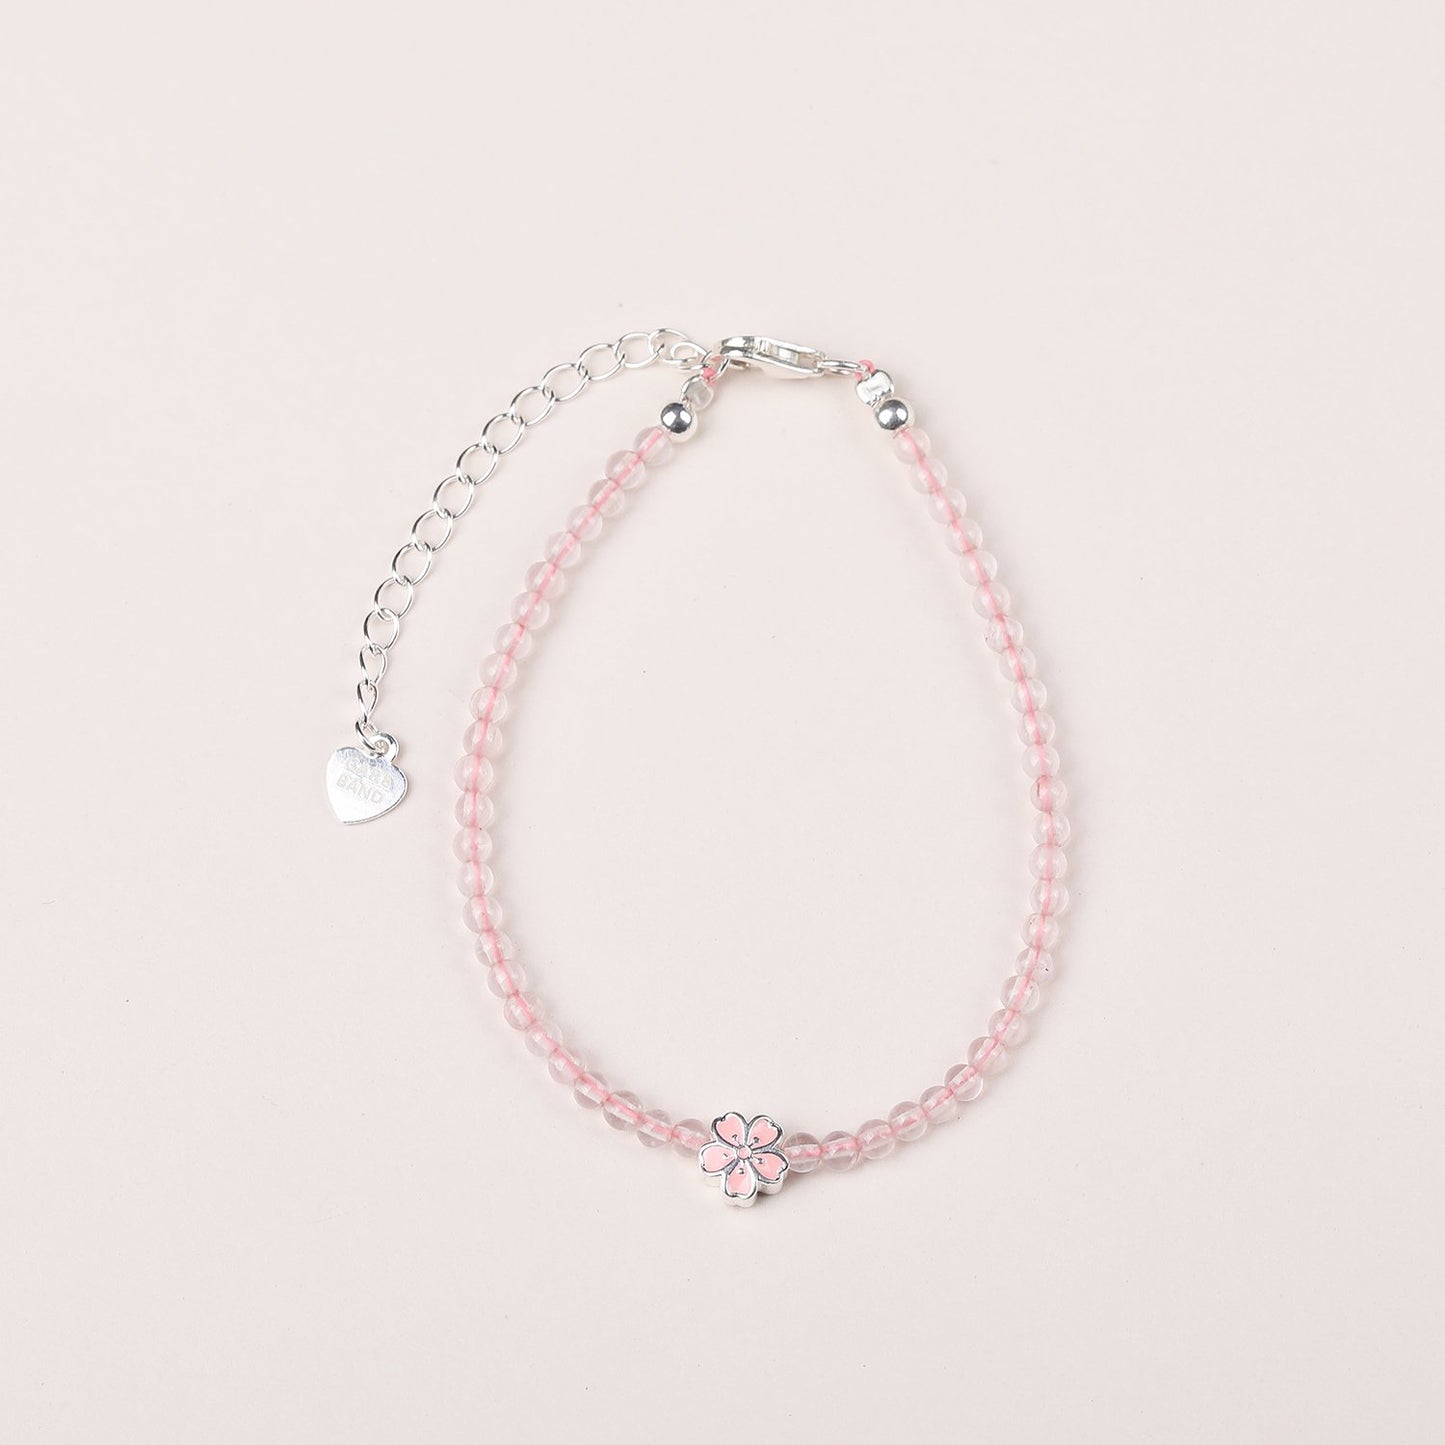 Soft Spring Care Band Rose Quartz Bracelet